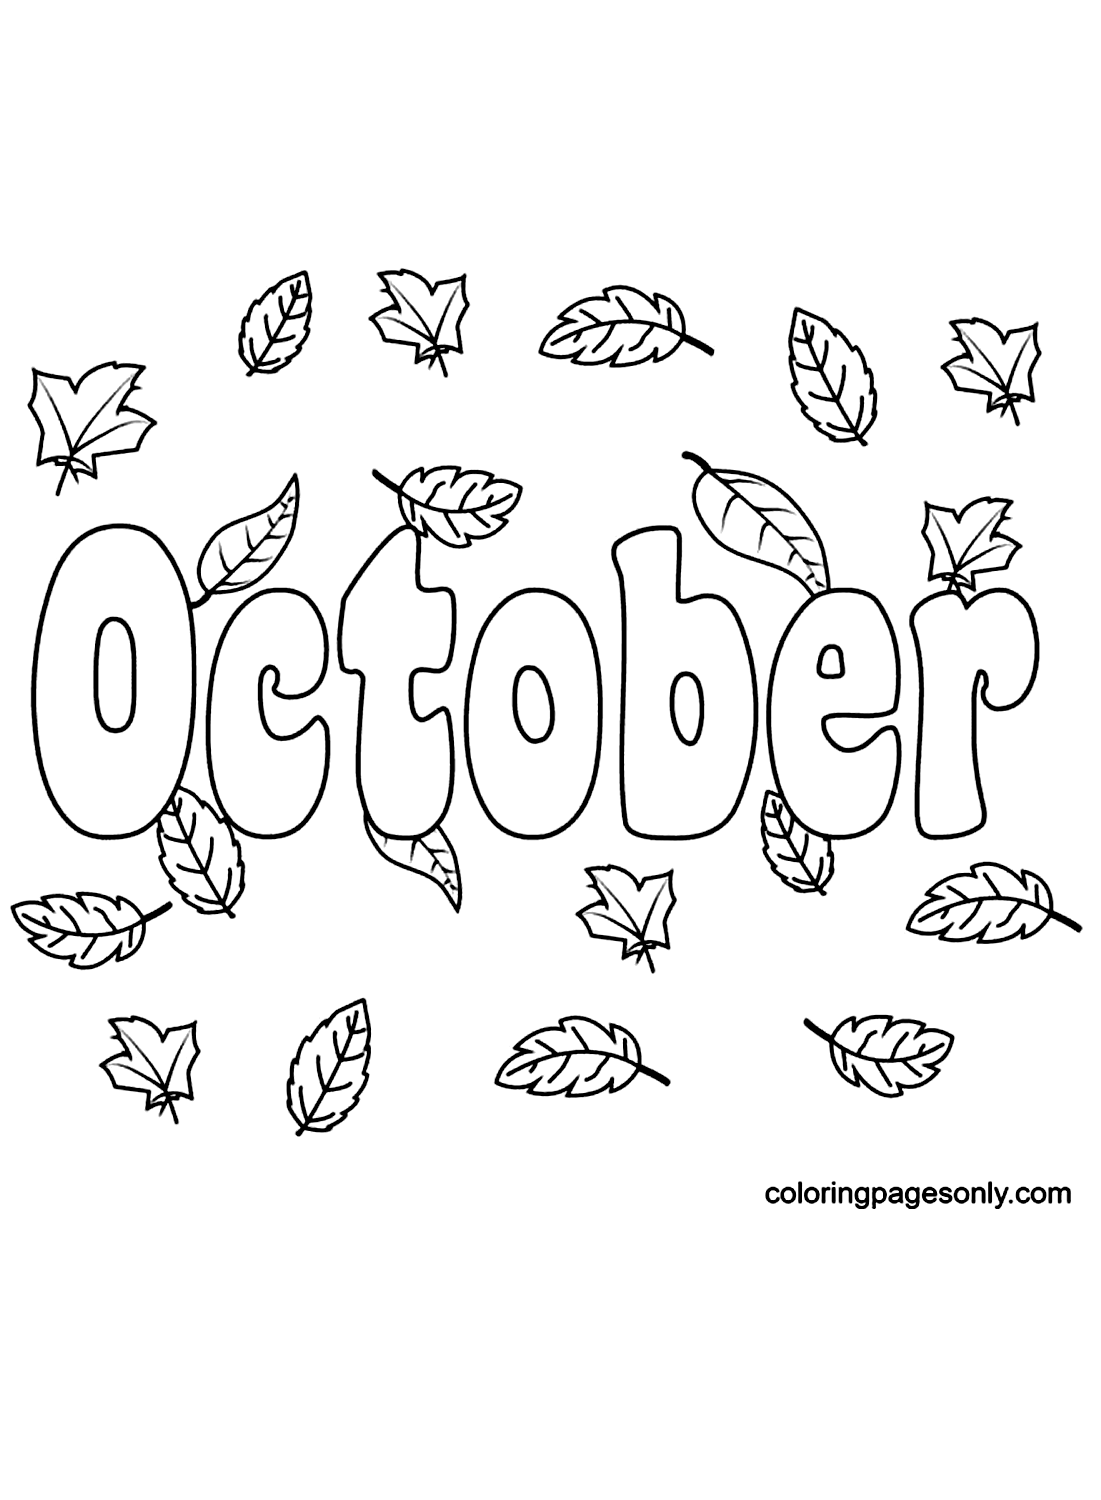 Octubre con hojas de otoño a partir de octubre.